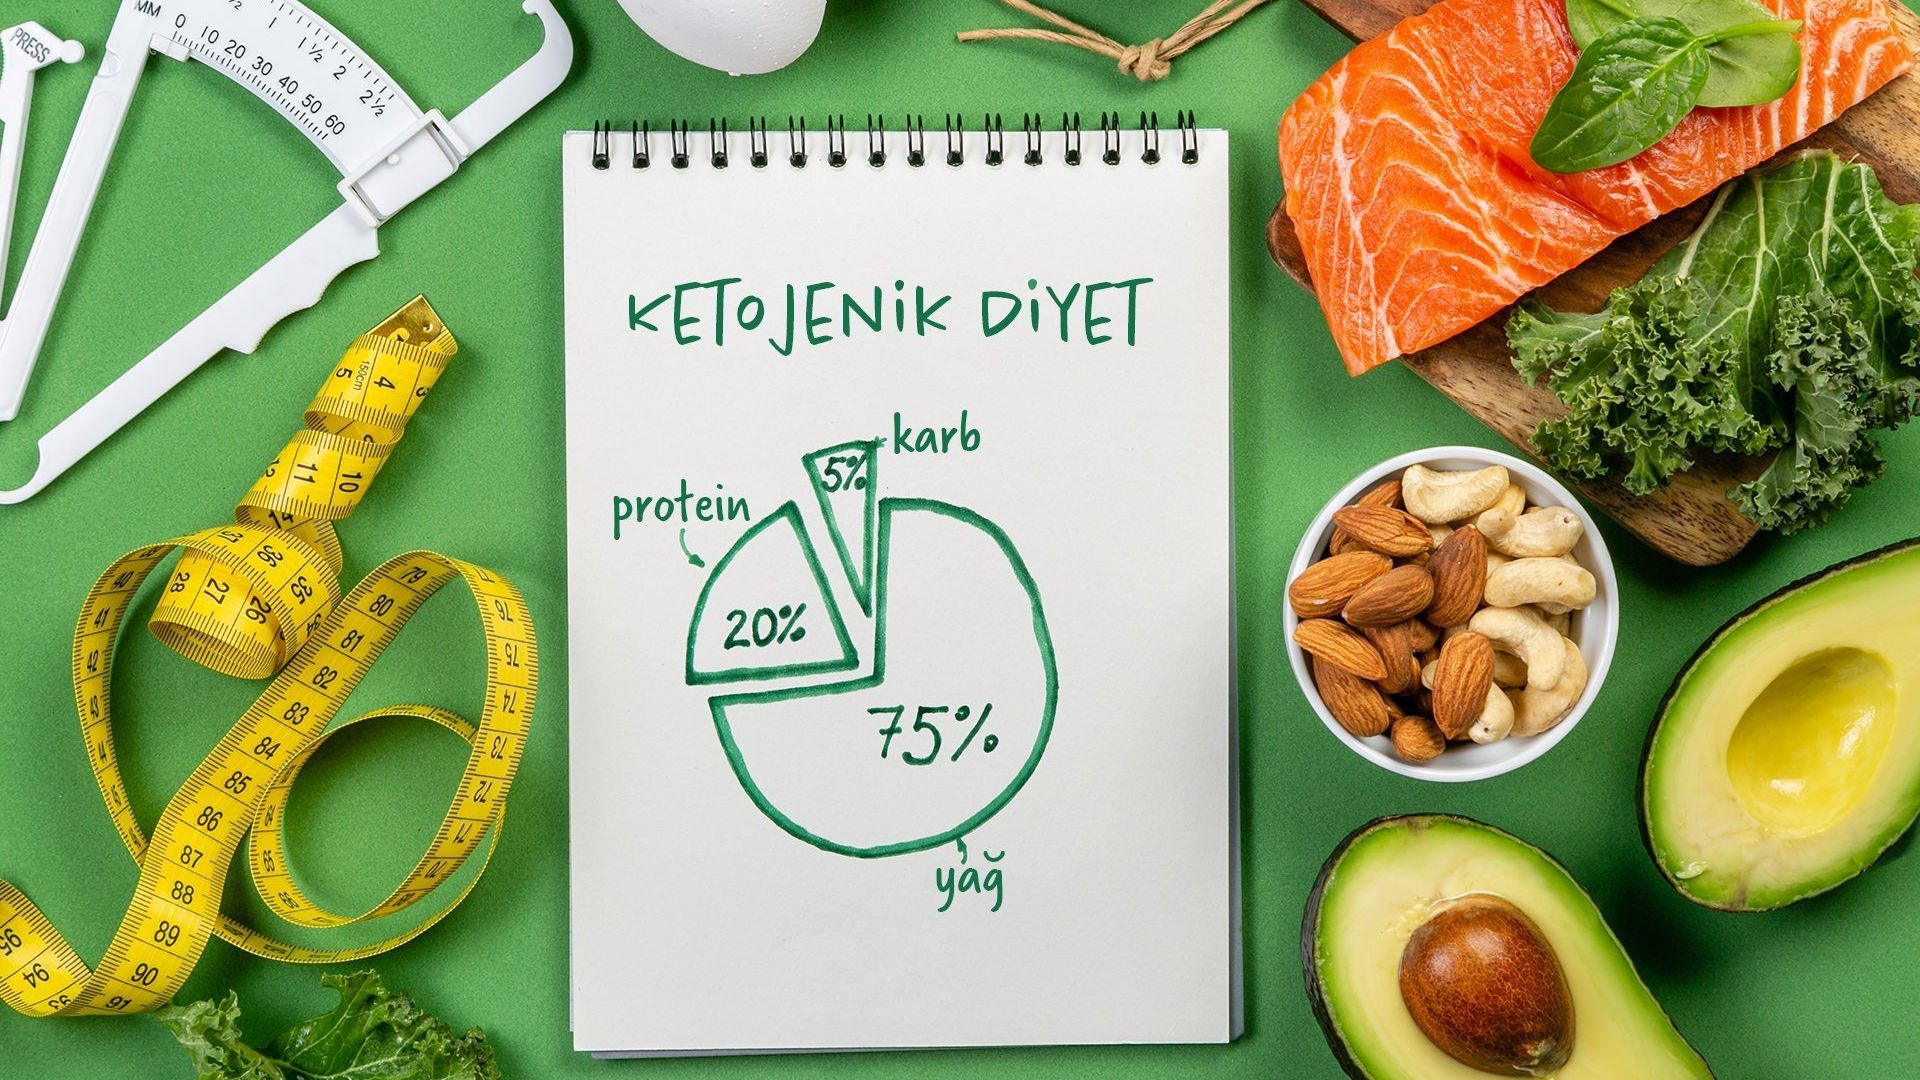 Ketojenik diyetin başlık olarak deftere yazıldığı bir görsel